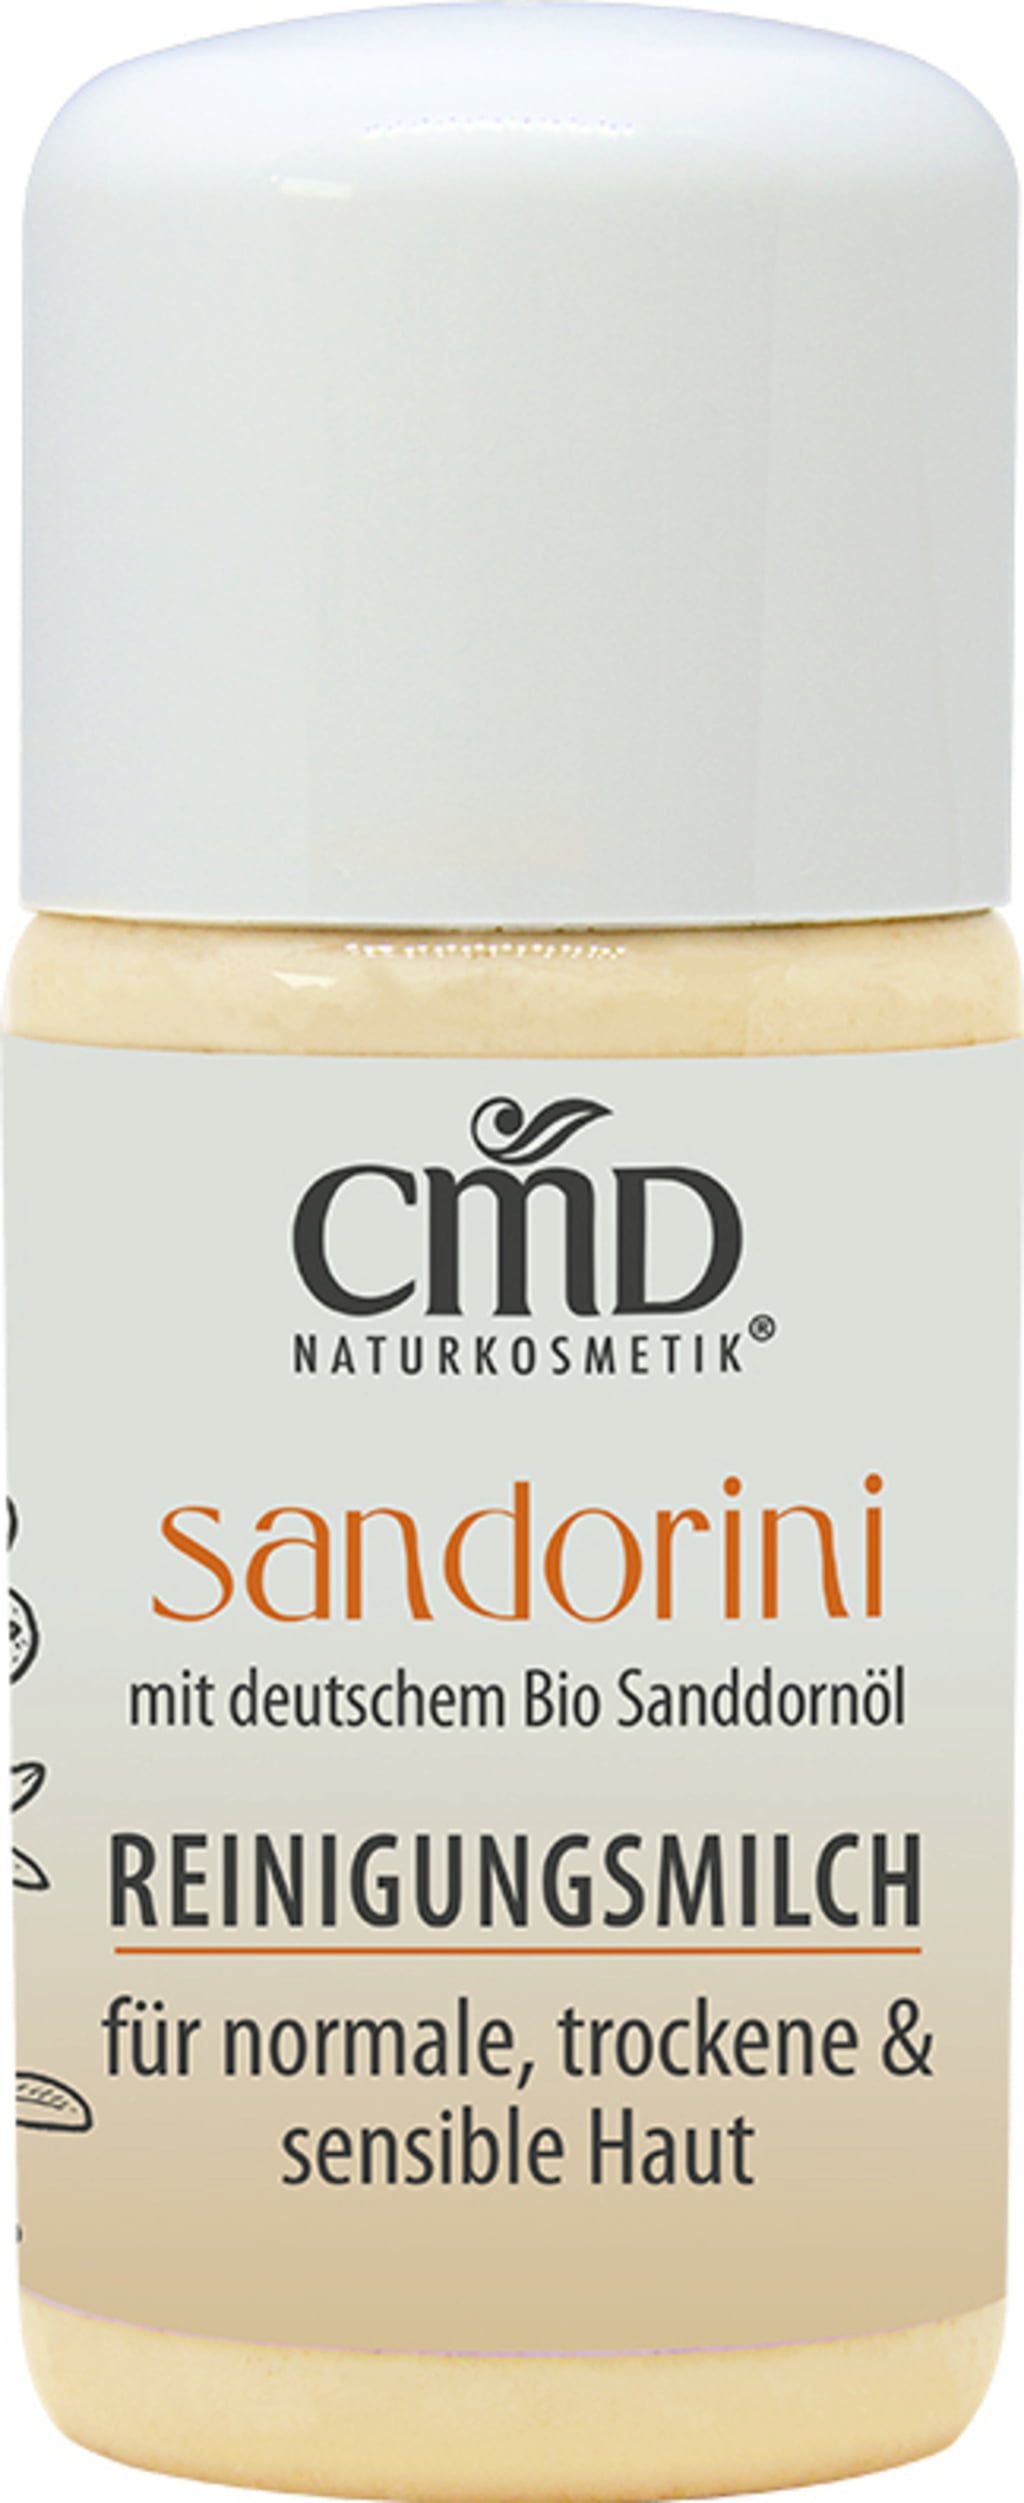 CMD Naturkosmetik Sandorini Reinigungsmilch - 30 ml